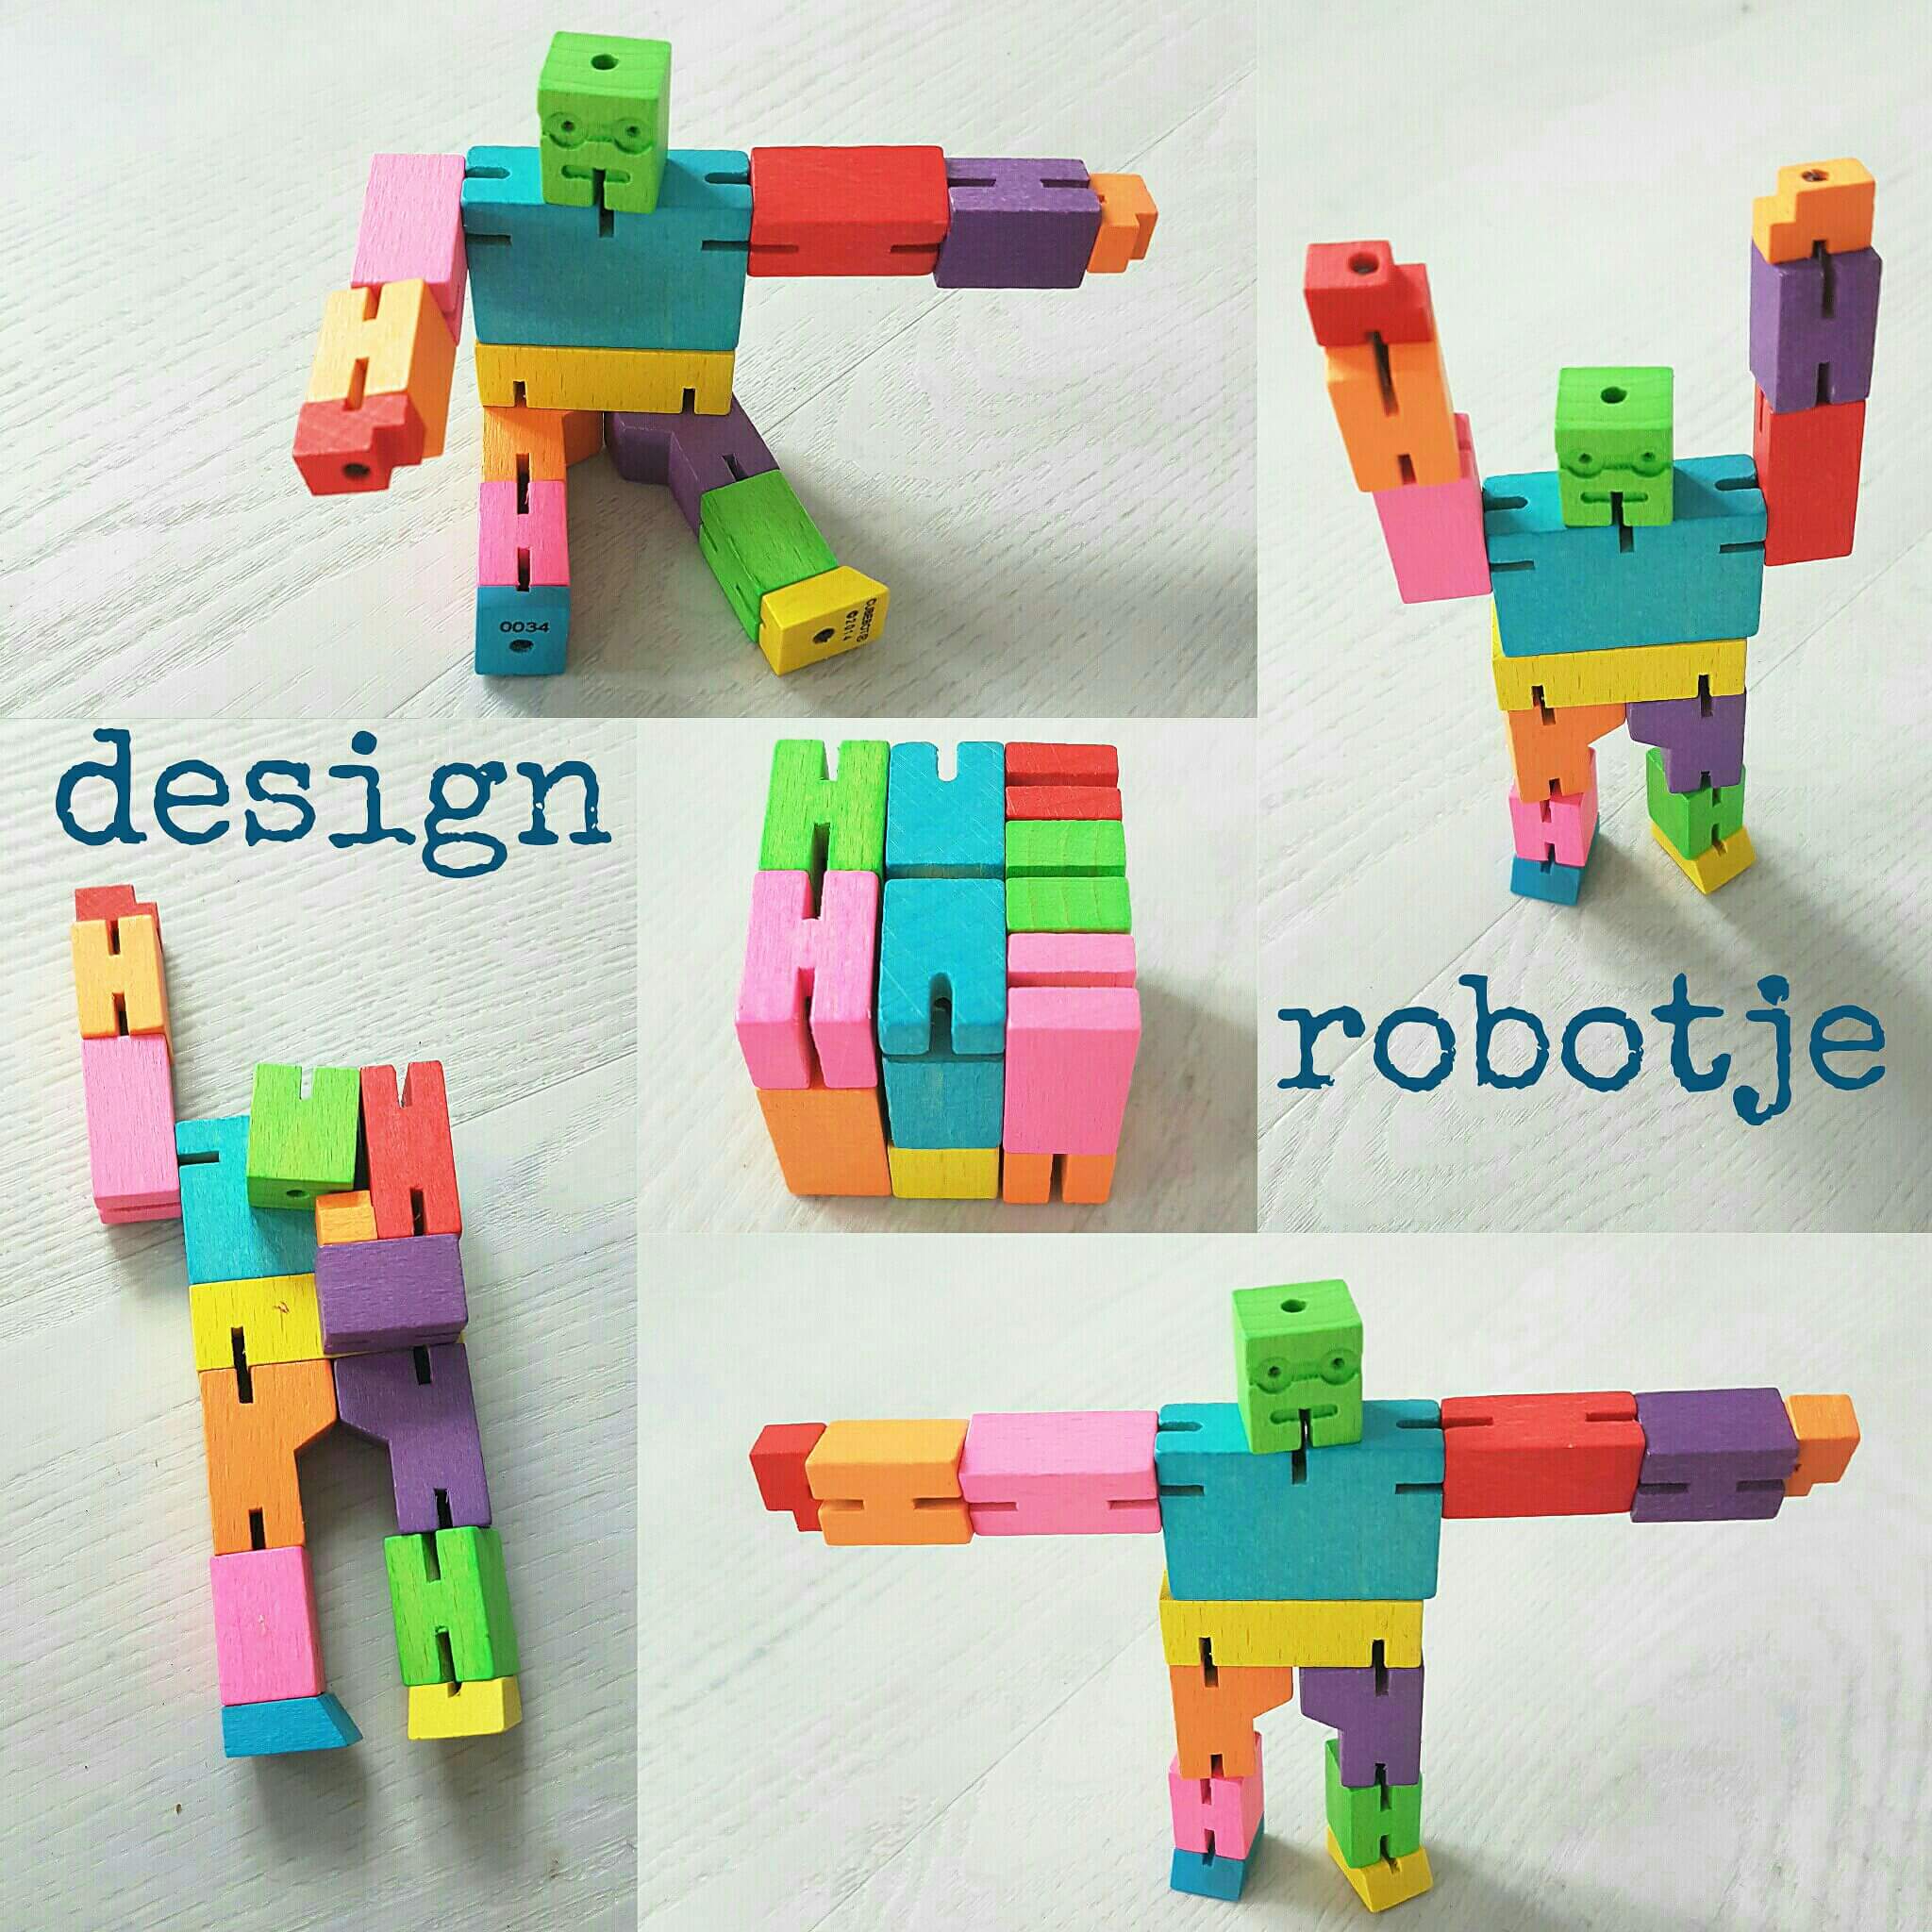 Design robotje om eindeloos mee te spelen én naar te kijken - Areaware Cubebot. Dit speelgoed is gemaakt van duurzaam beukenhout. 